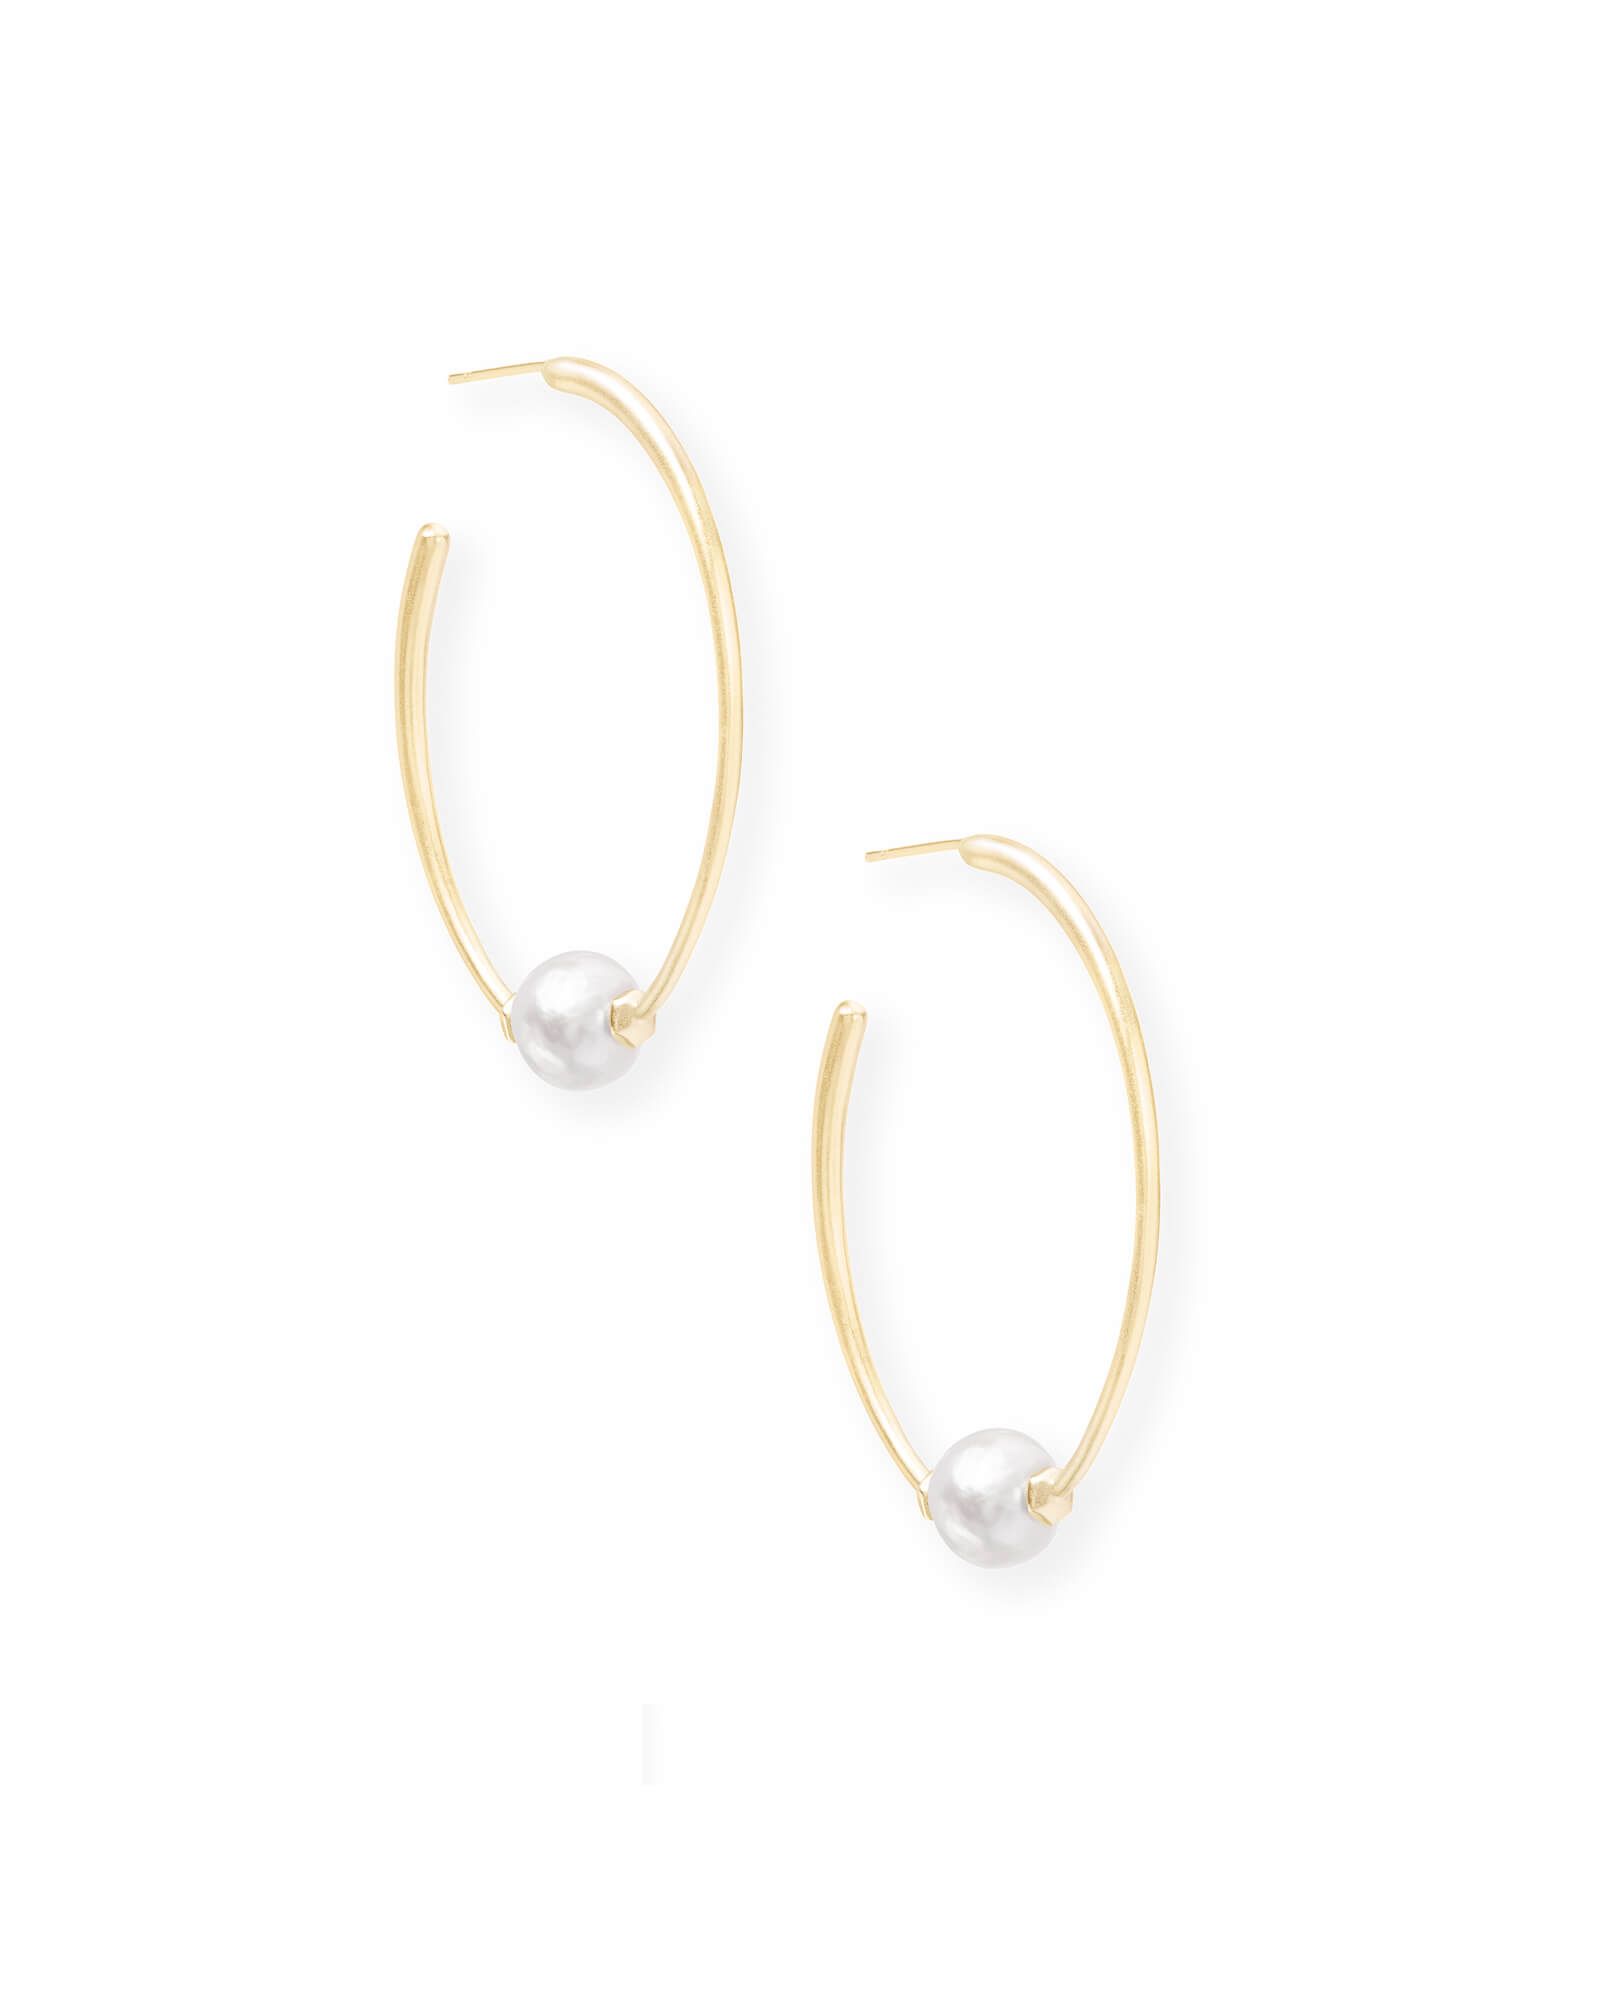 Regina Gold Hoop Earrings in Pearl | Kendra Scott | Kendra Scott